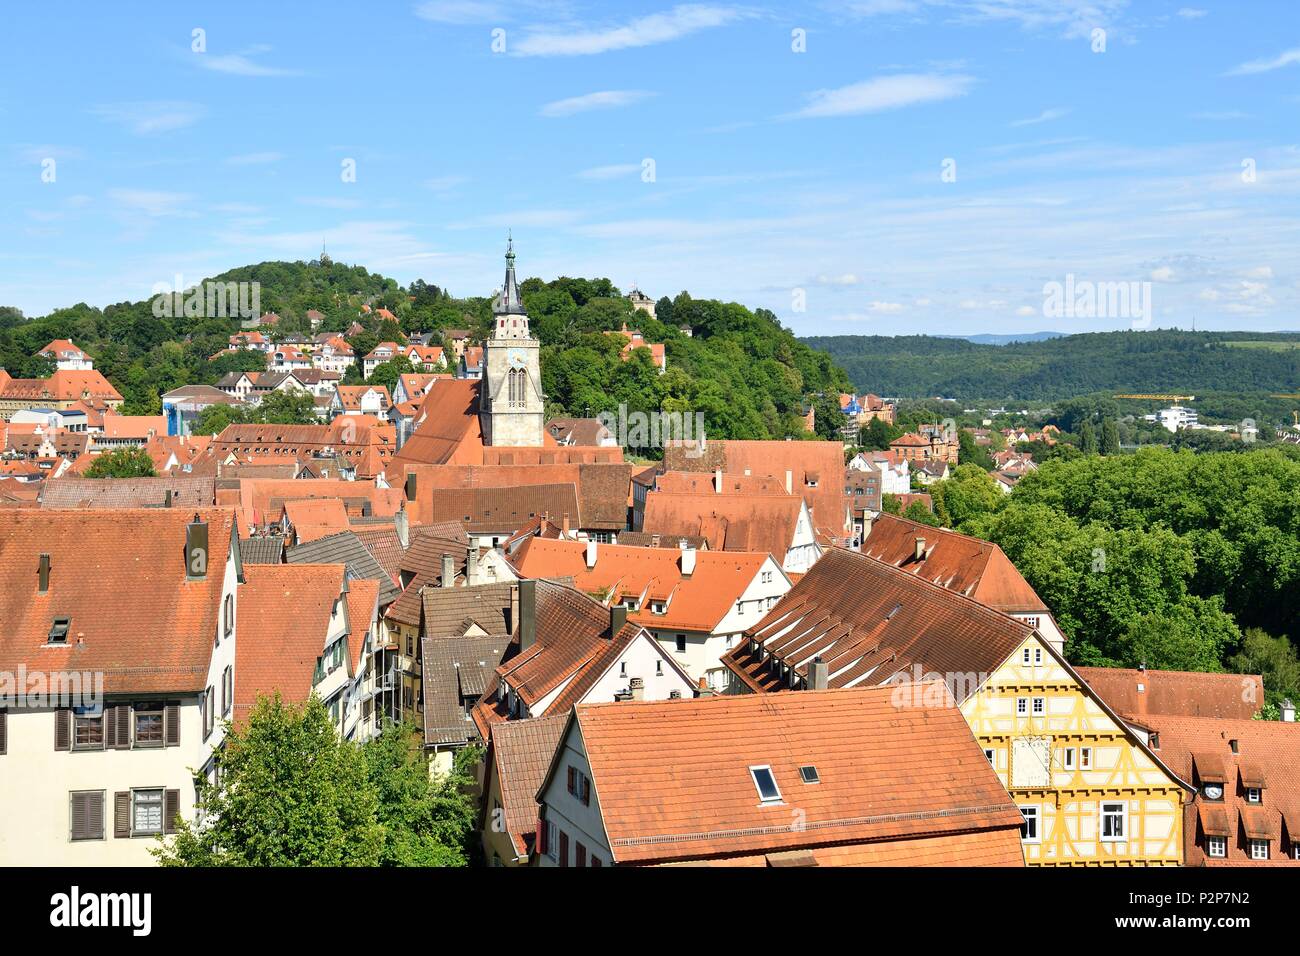 Germany, Baden-Wurttemberg, Neckartal (Neckar valley), Tübingen Stock Photo